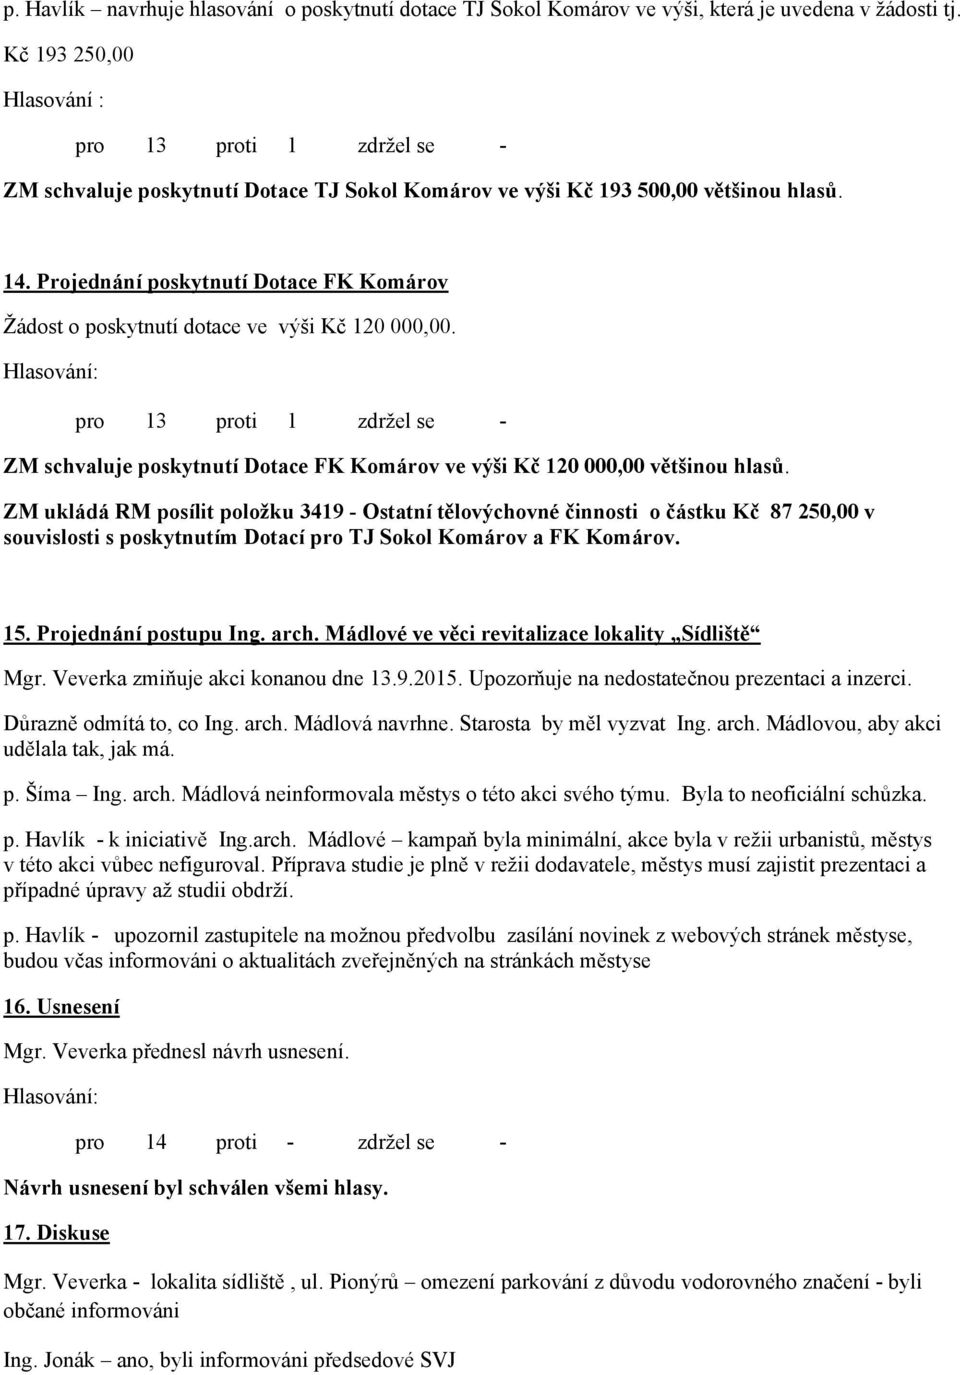 Projednání poskytnutí Dotace FK Komárov Žádost o poskytnutí dotace ve výši Kč 120 000,00. pro 13 proti 1 zdržel se - ZM schvaluje poskytnutí Dotace FK Komárov ve výši Kč 120 000,00 většinou hlasů.